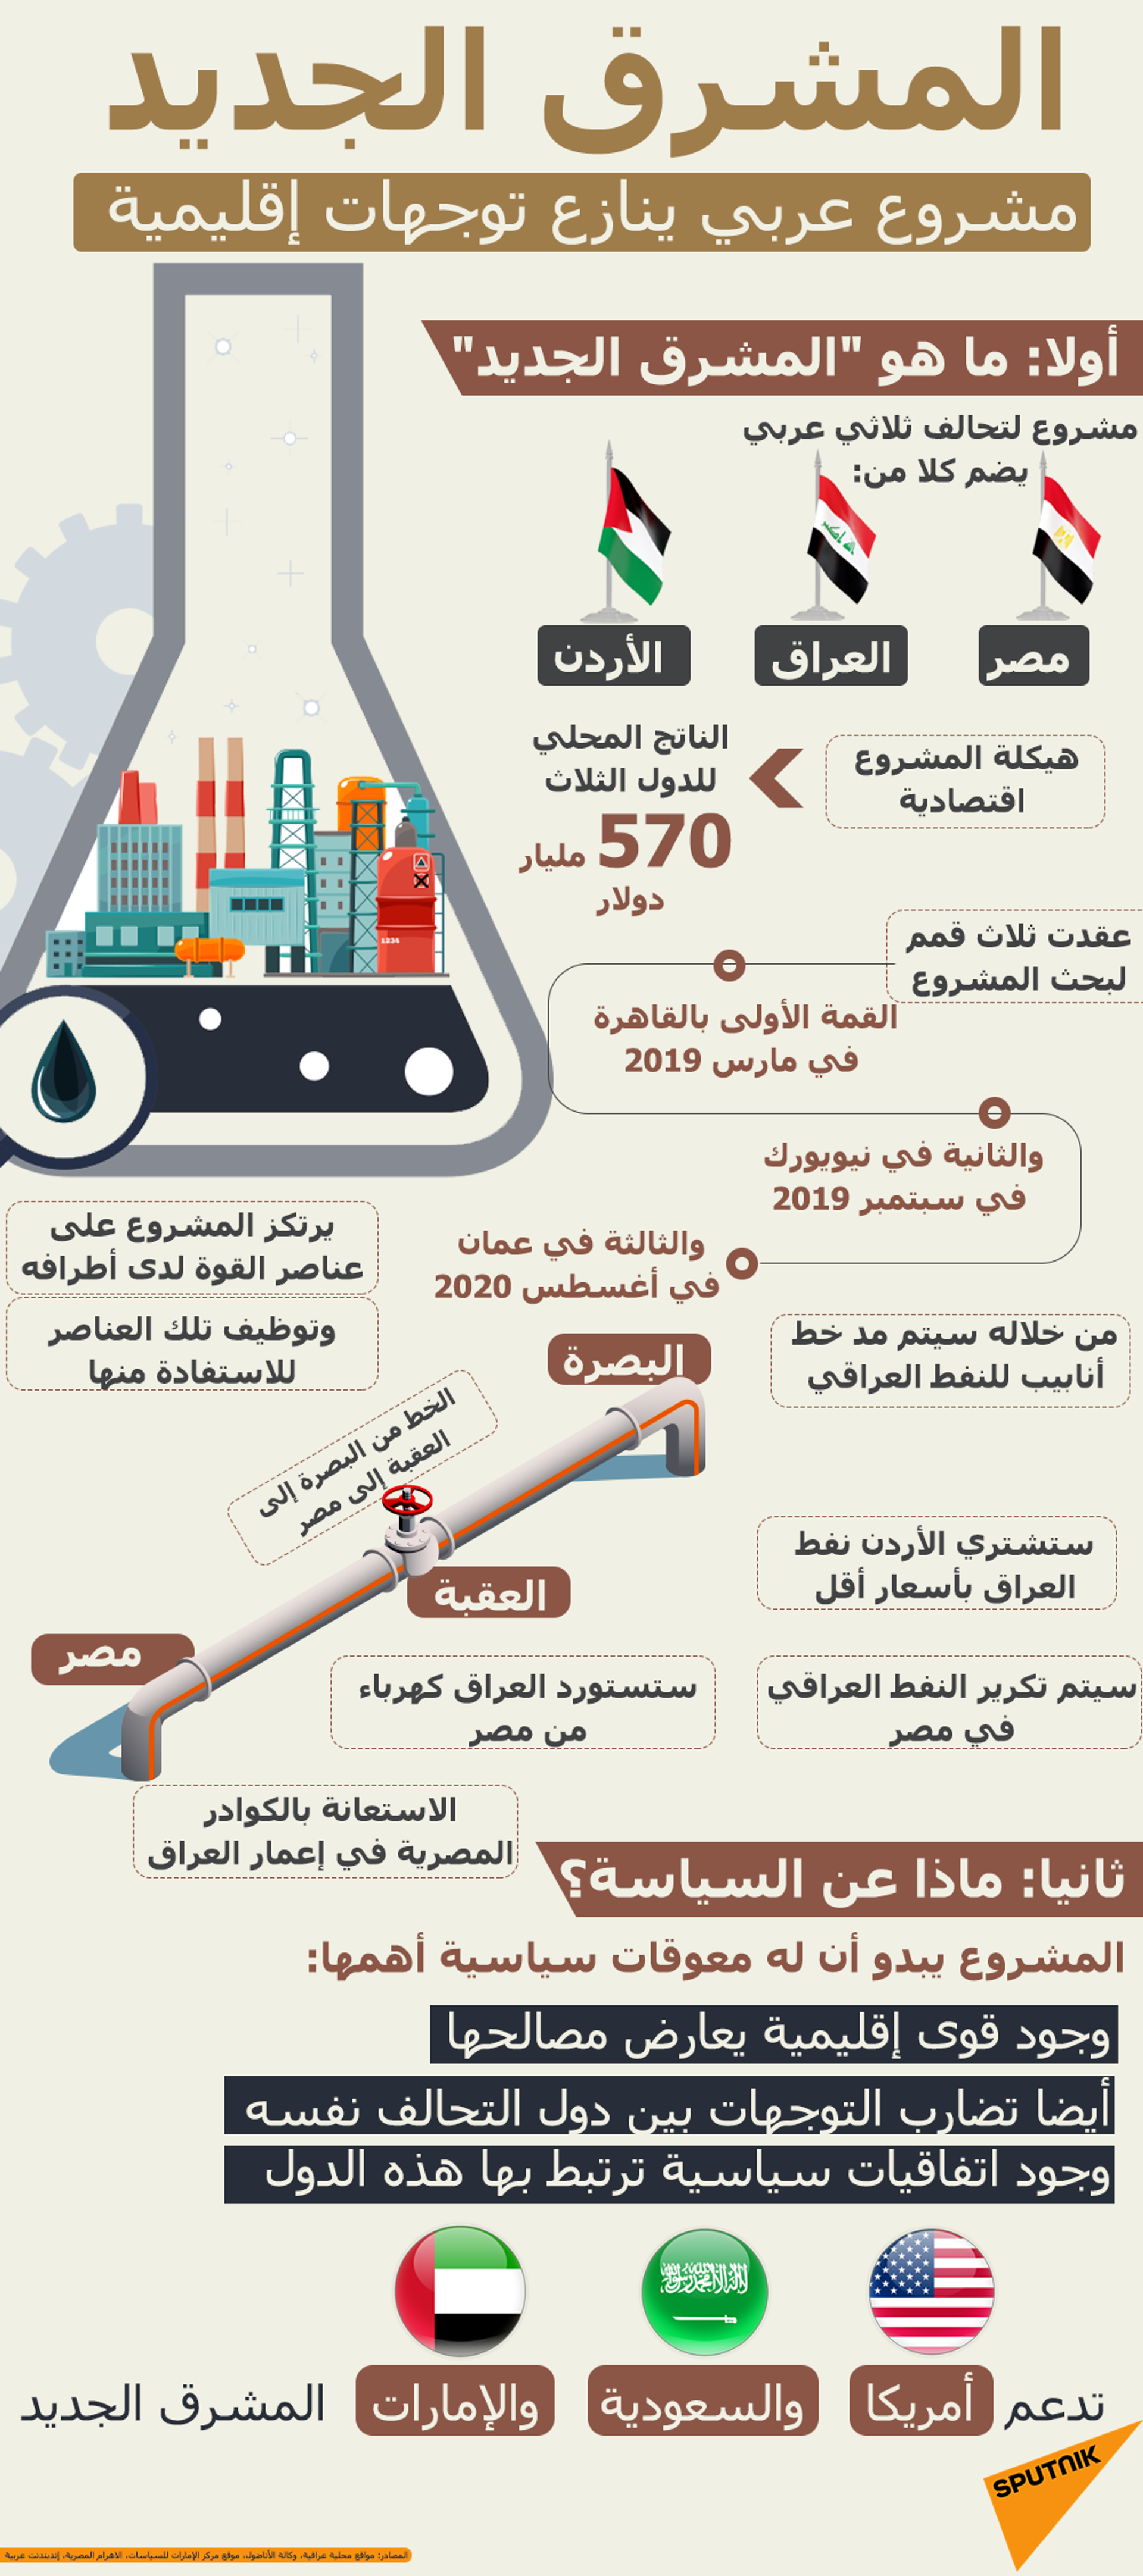  النفط العراقية تكشف لـسبوتنيك تفاصيل تنفيذ أنبوب النفط البصرة - العقبة الذي يصل مصر - سبوتنيك عربي, 1920, 01.04.2021